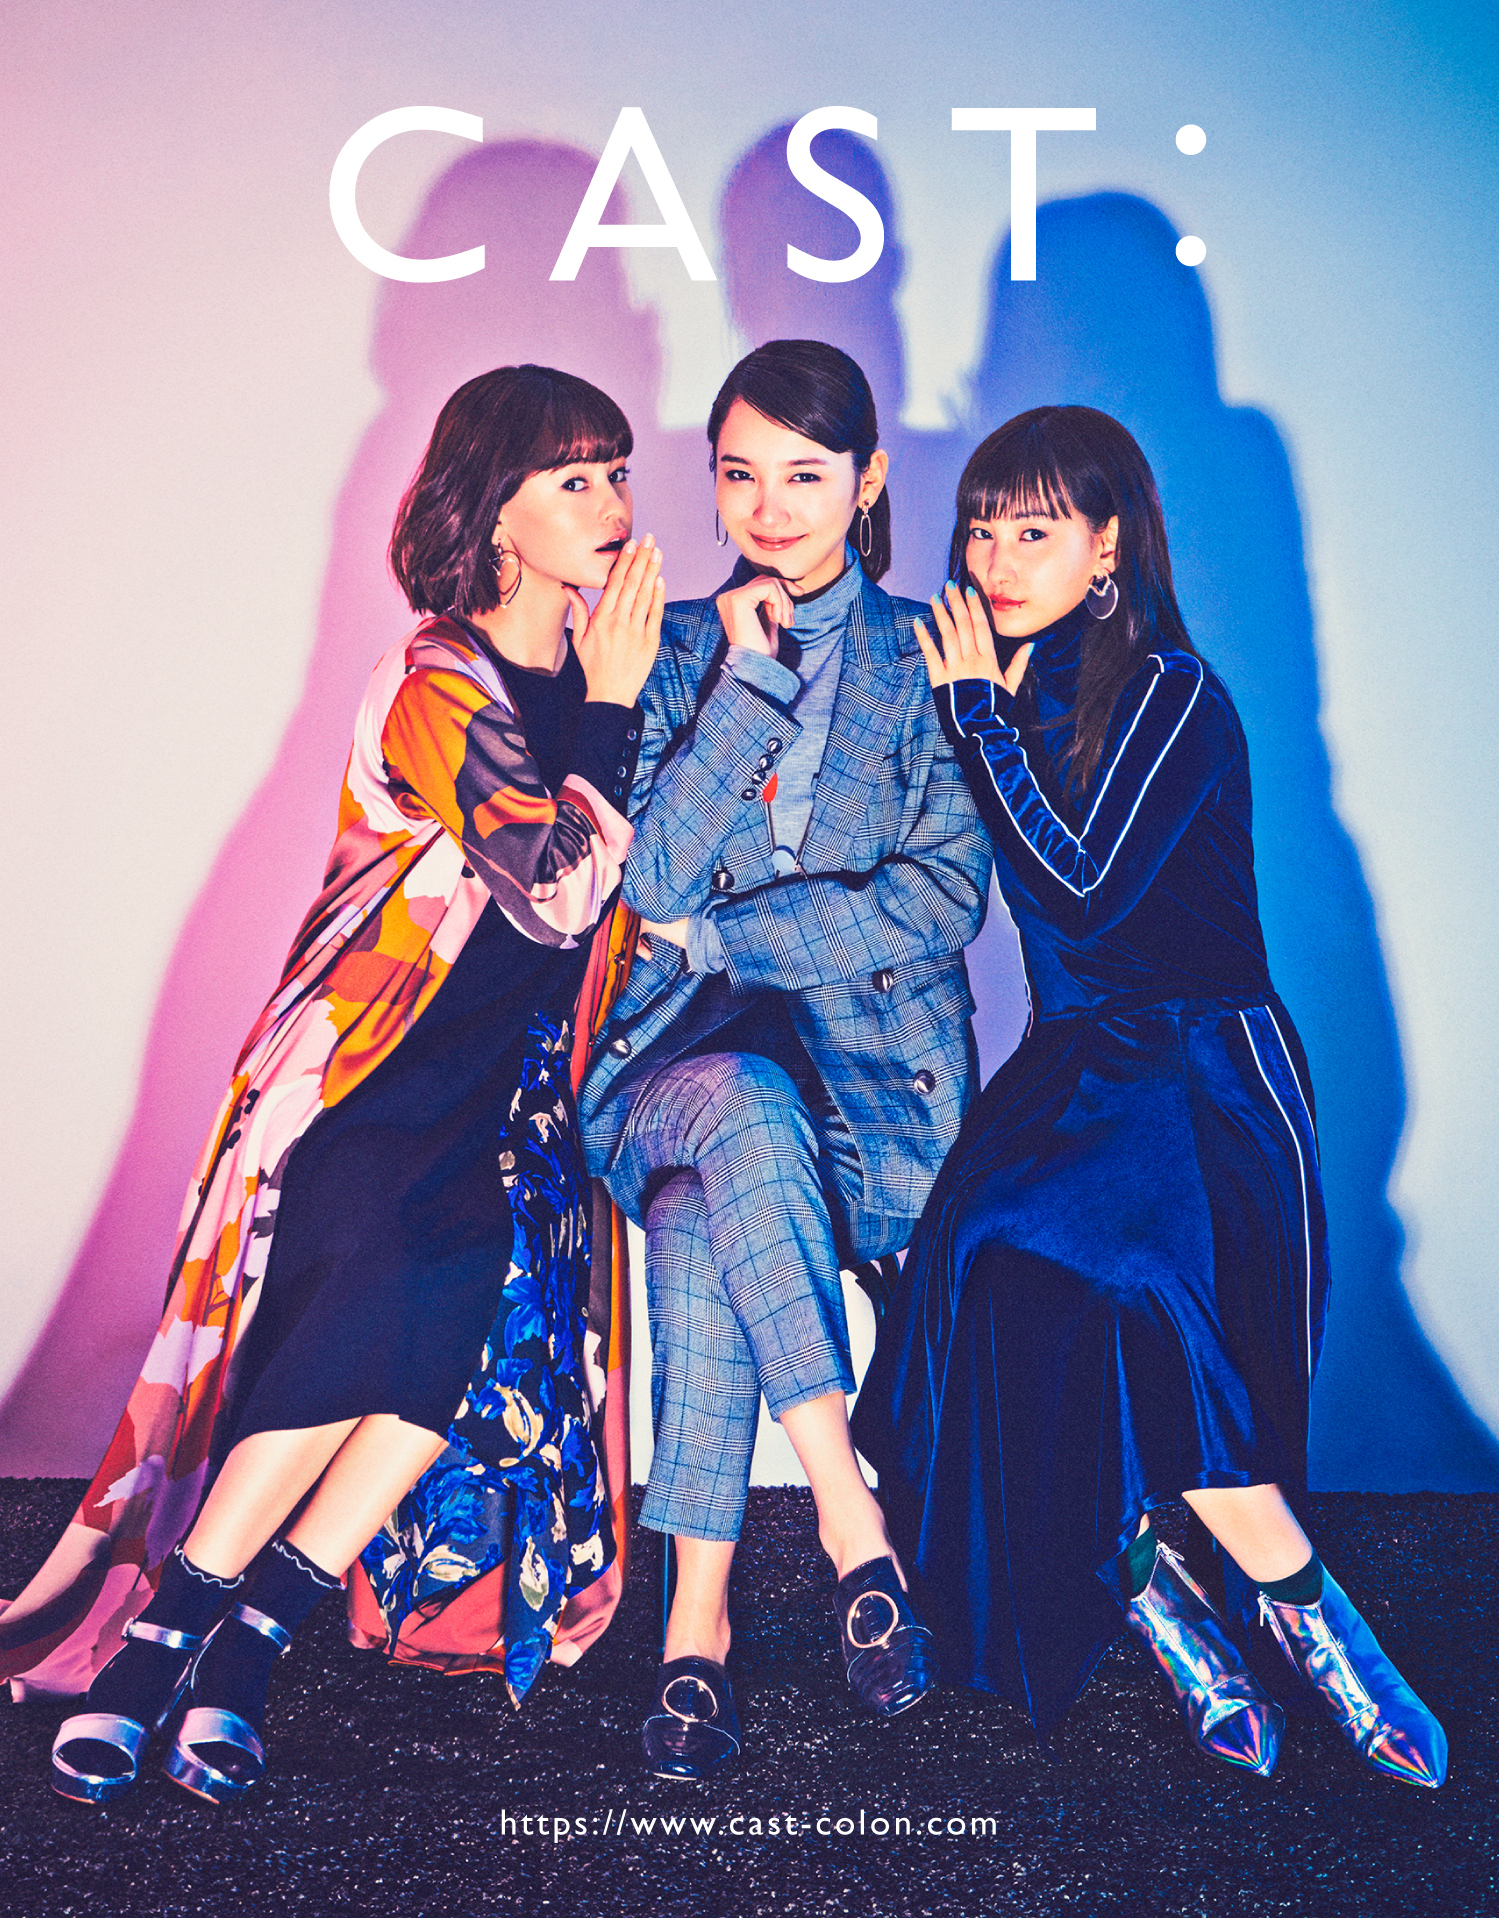 人生という物語を 演じるための服 新ブランド Cast 誕生 個性の異なる3人の女性像のファッションをワンブランドで表現 株式会社三陽商会のプレスリリース